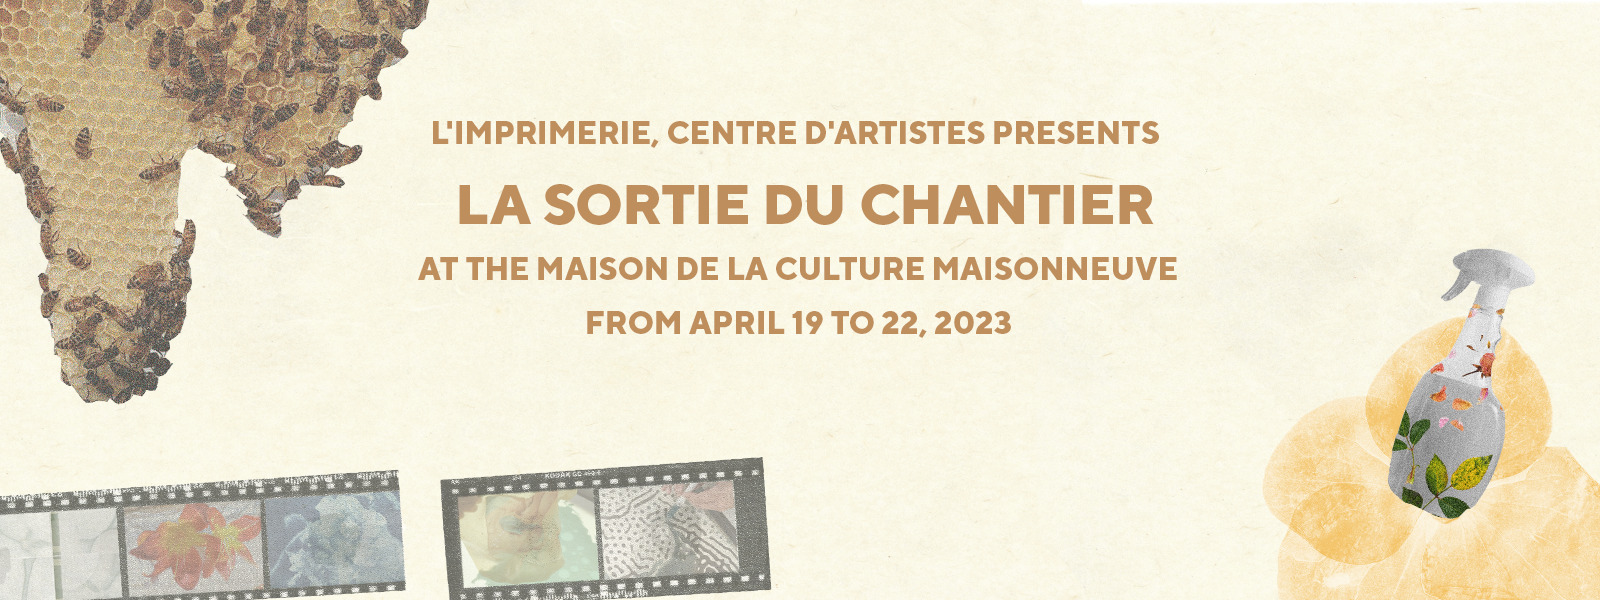 L'imprimerie, centre d'artiste presents La sortie du Chantier at the Maison de la culture Maisonneuve.